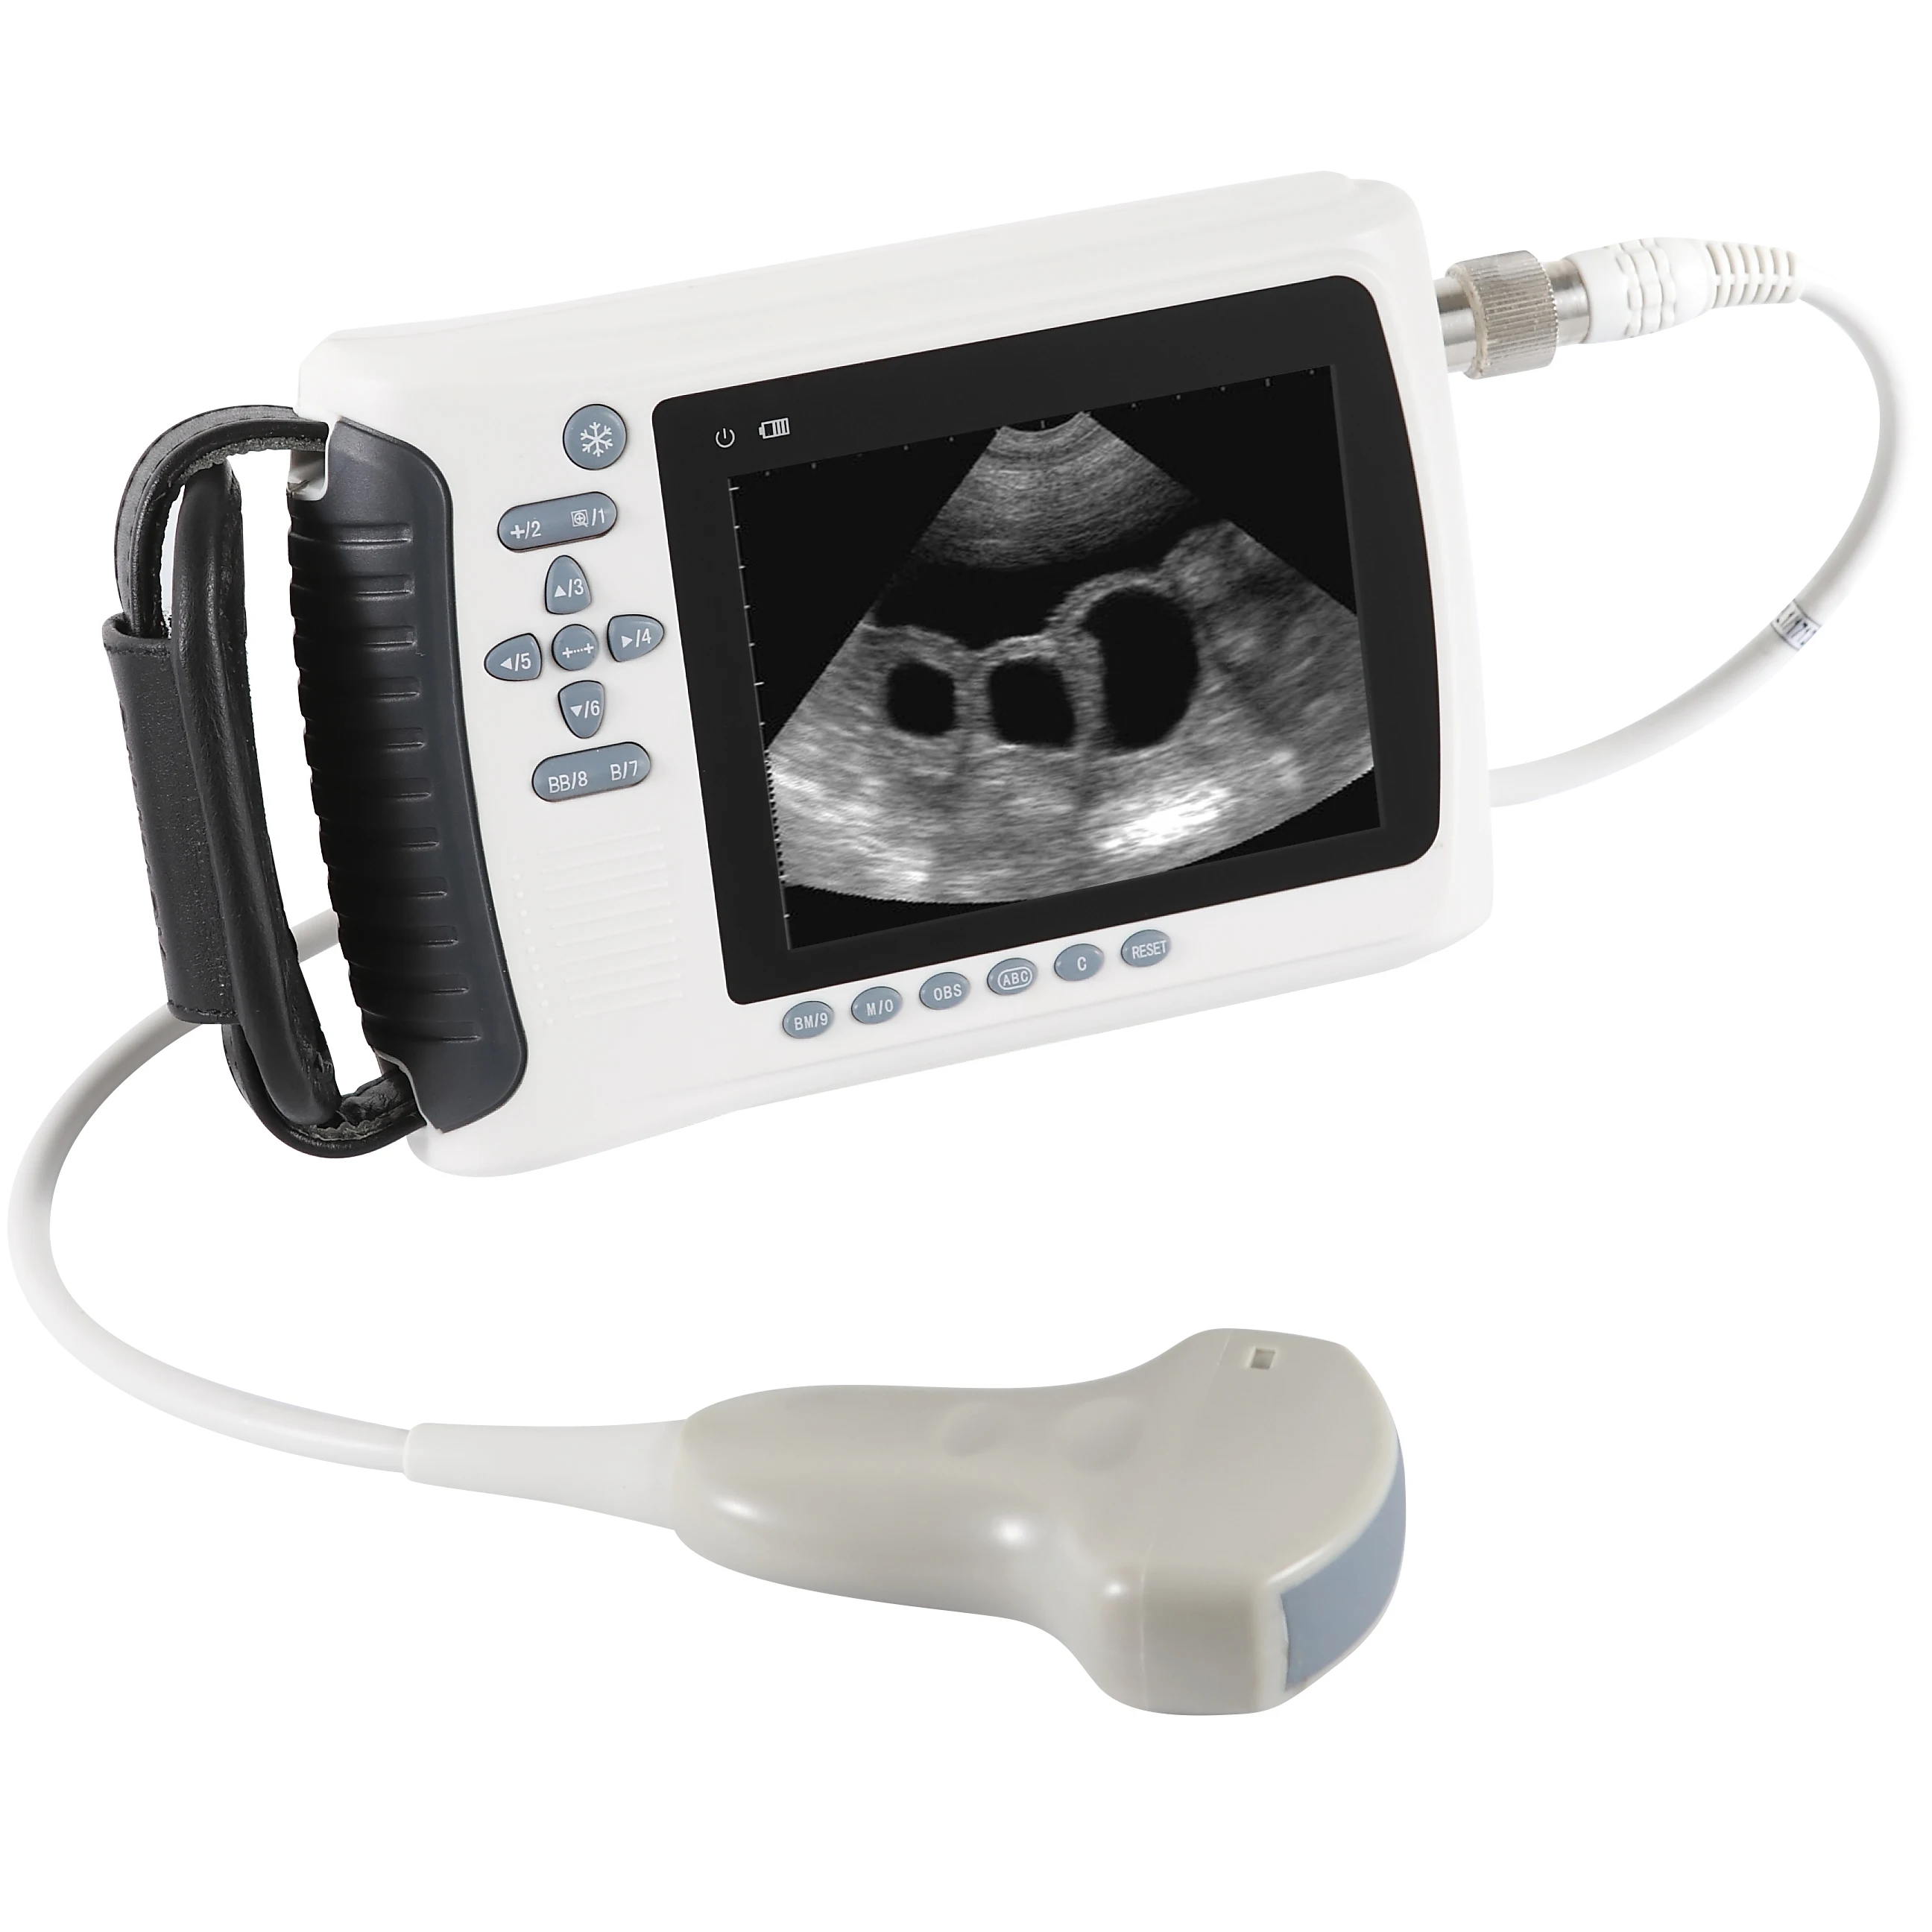 
Portable Bovine Equine Veterinary Handheld Ultrasound Scanner 